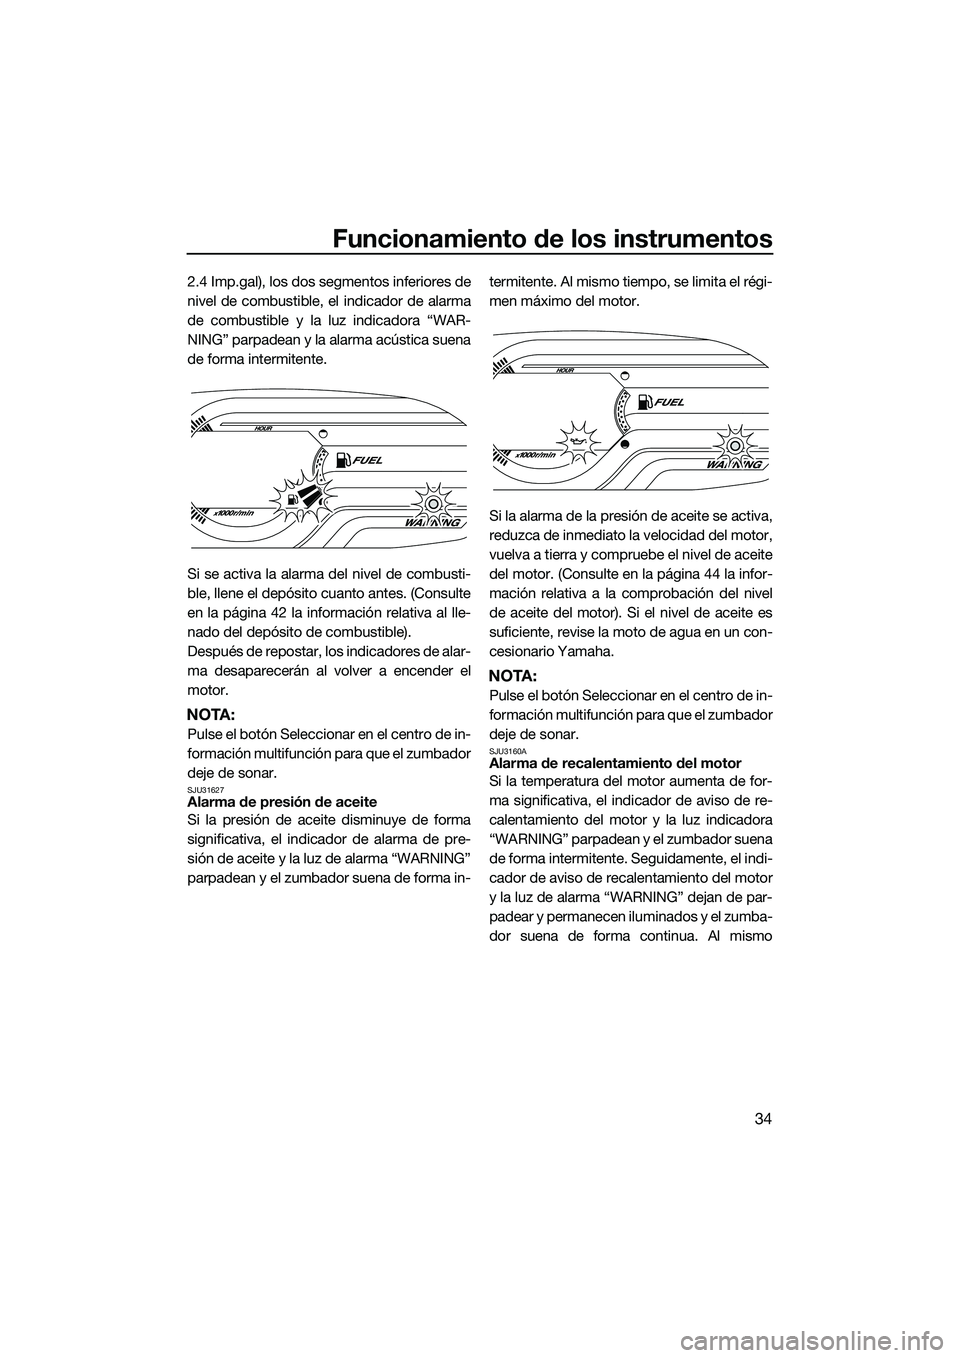 YAMAHA V1 2015  Manuale de Empleo (in Spanish) Funcionamiento de los instrumentos
34
2.4 Imp.gal), los dos segmentos inferiores de
nivel de combustible, el indicador de alarma
de combustible y la luz indicadora “WAR-
NING” parpadean y la alarm